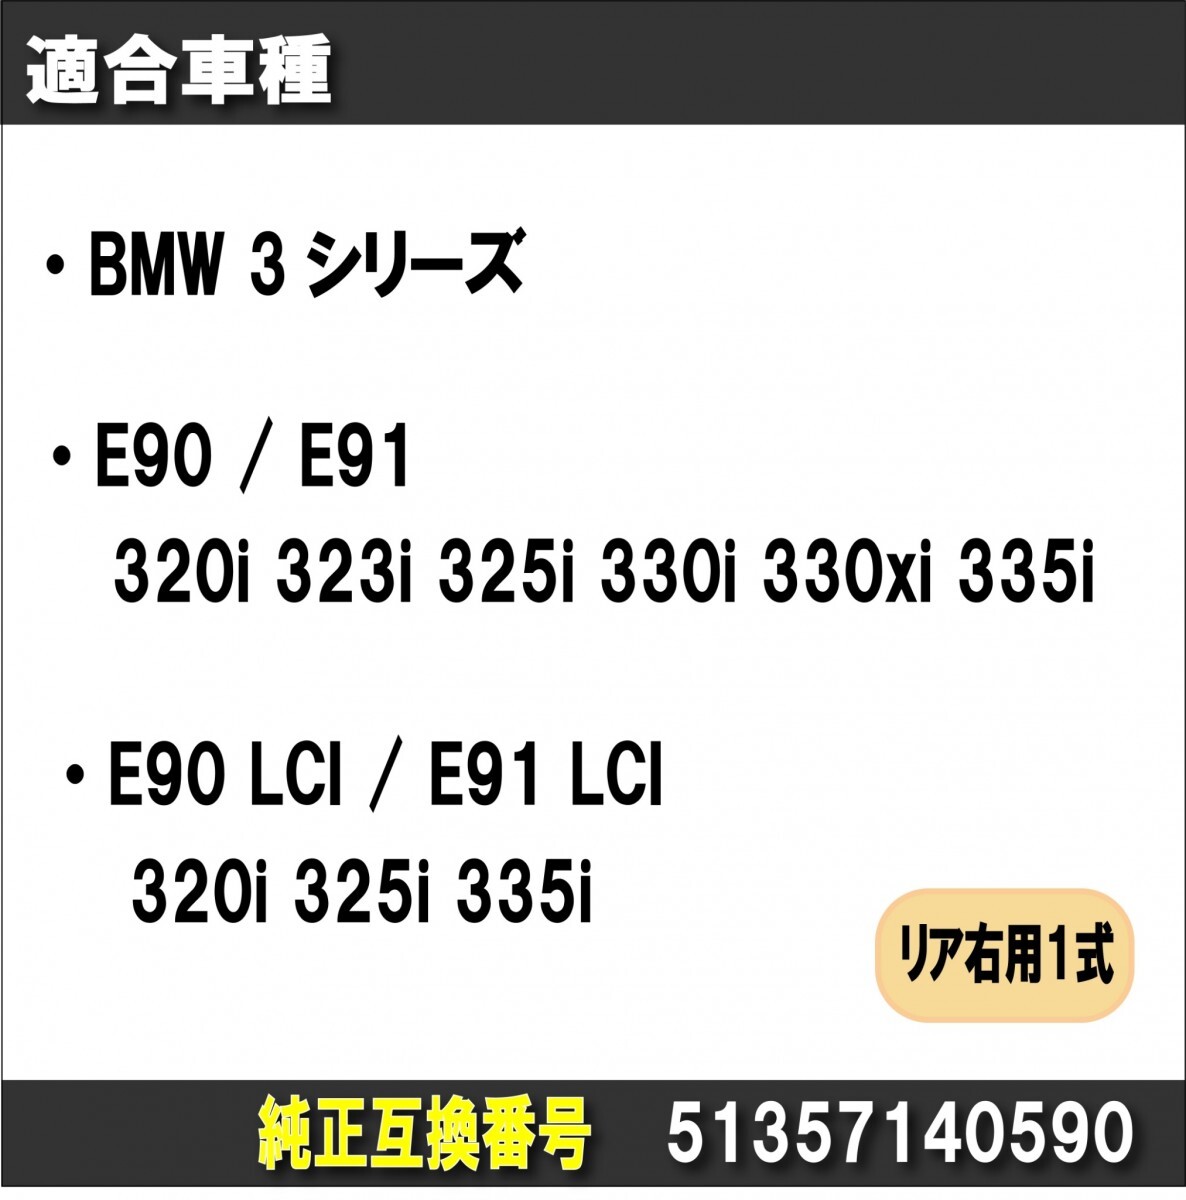 BMW 3シリーズ E90/E91 E90 LCI/E91 LCI パワー ウィンドウ レギュレーター モーター無し 51357140589 高品質 社外品 (リア/後部 右用)_画像2